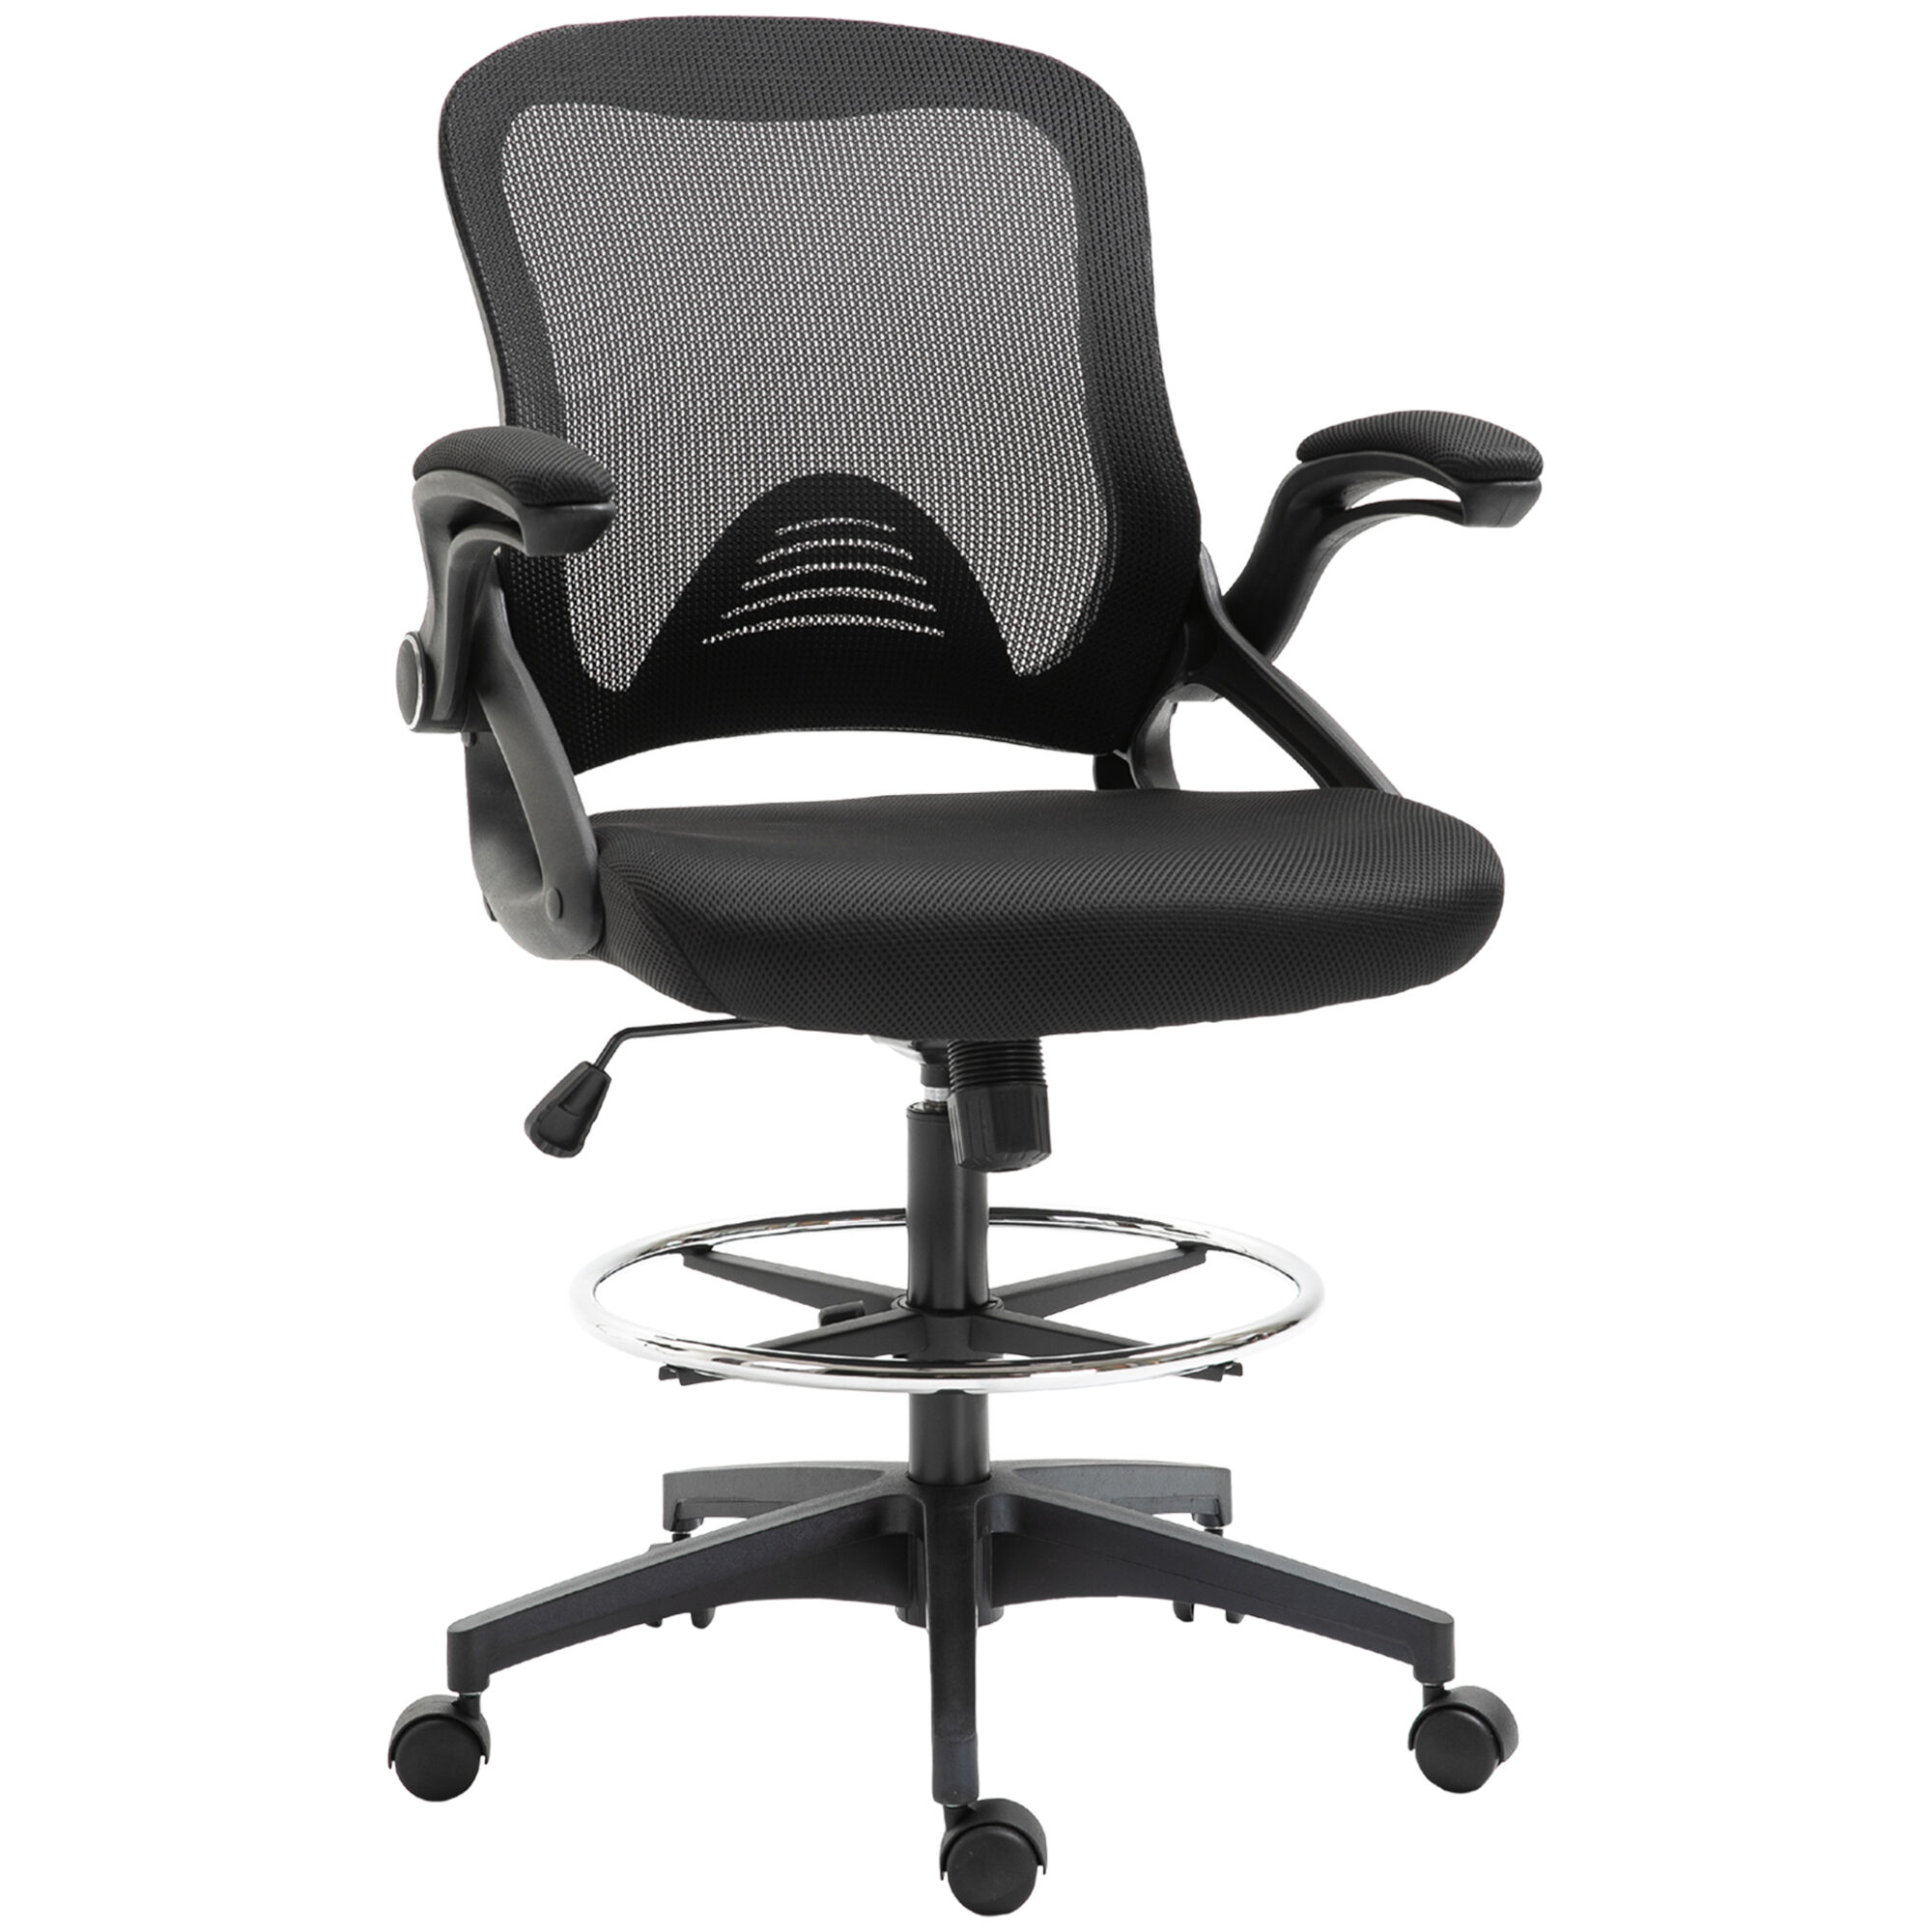 HOMCOM Vinsetto Fauteuil de bureau chaise de bureau assise haute réglable dim. 64L x 60l x 106-126H cm pivotant 360° maille respirante noir